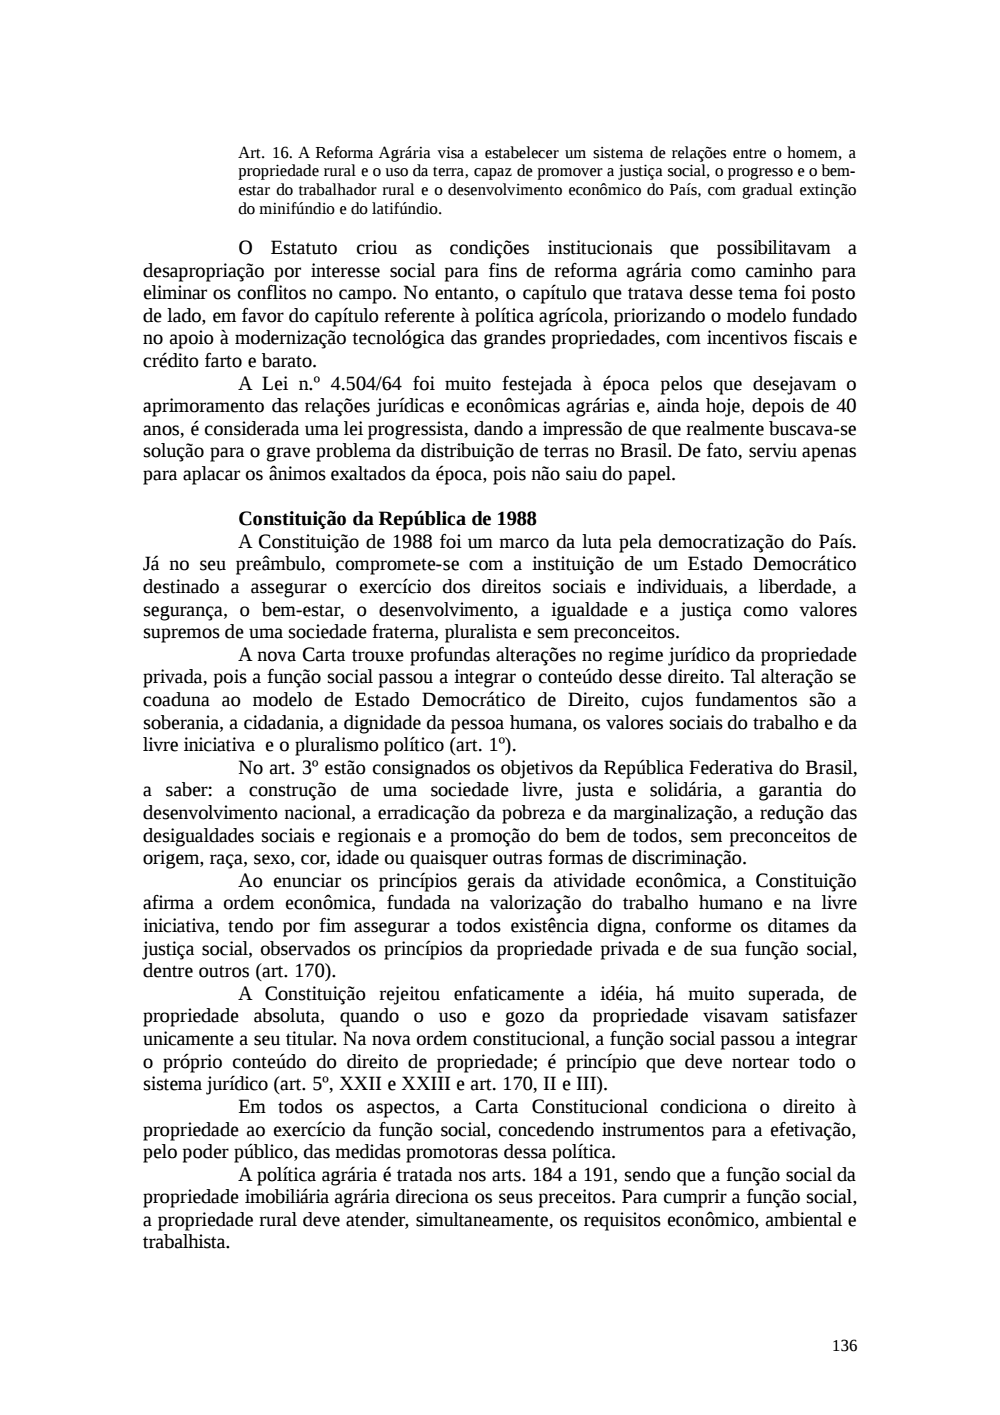 Page 136 from Relatório final da comissão